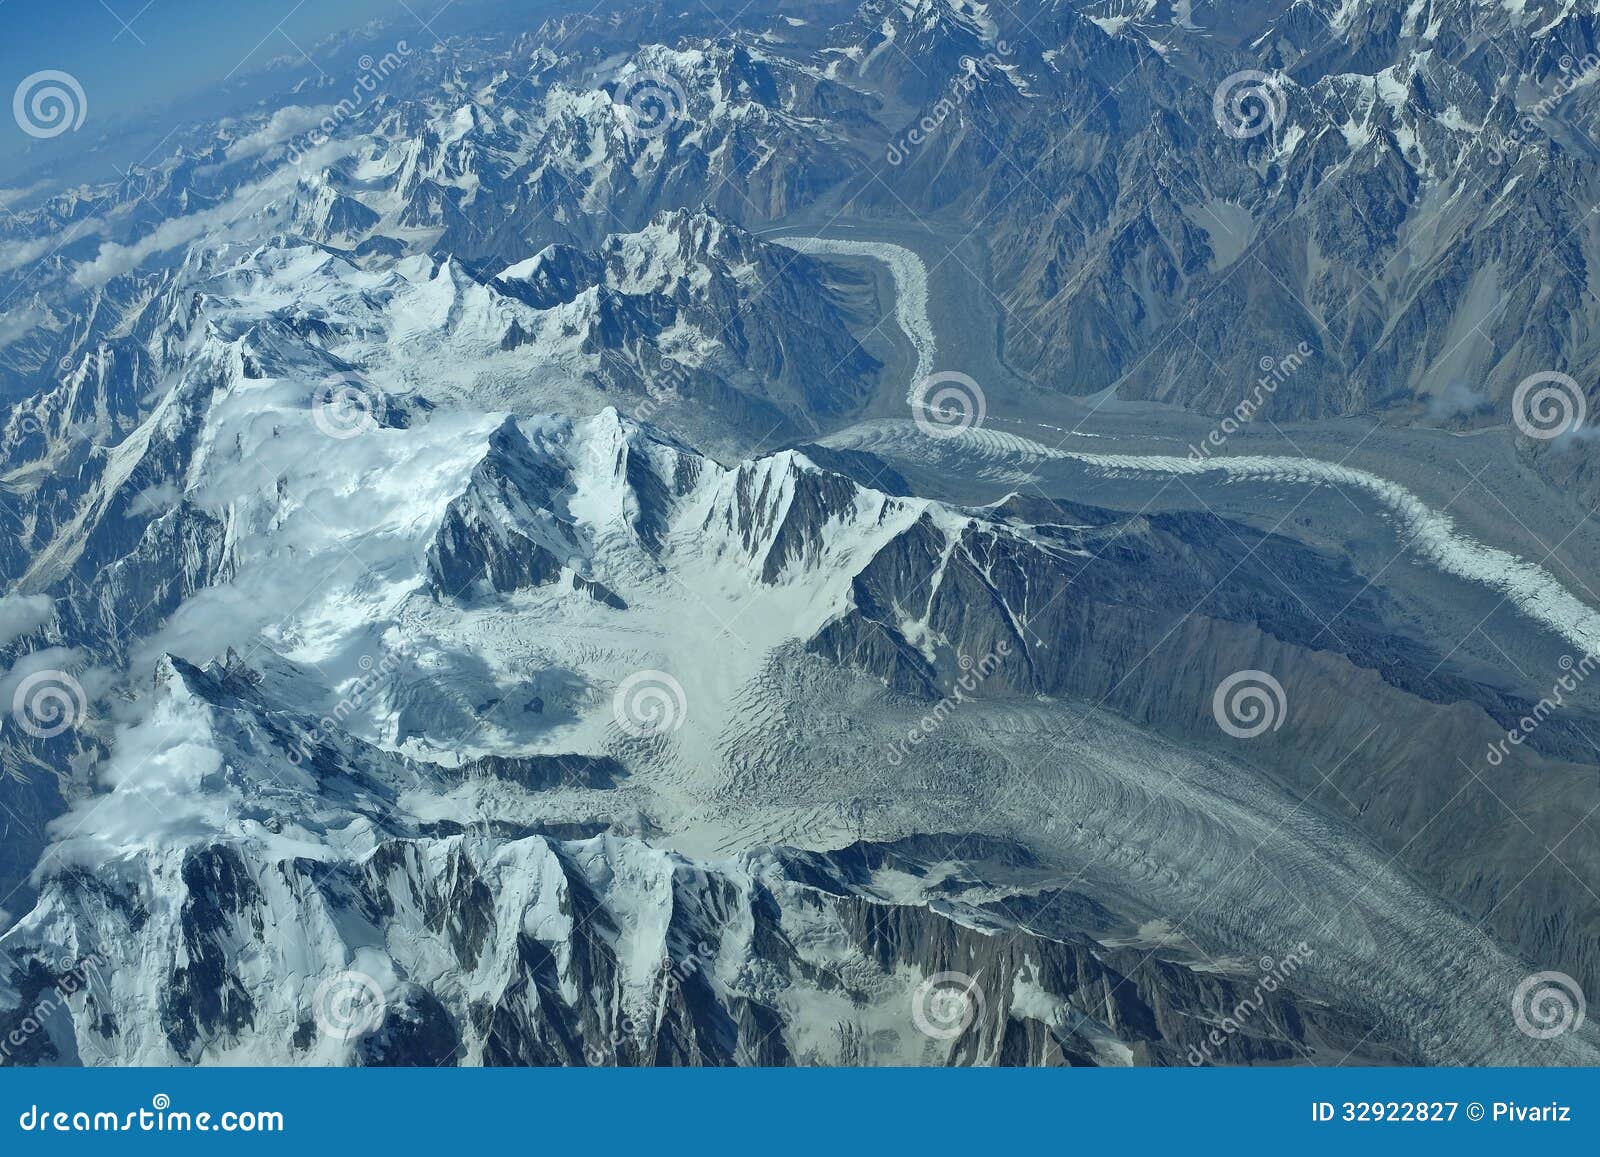 himalayas glacier